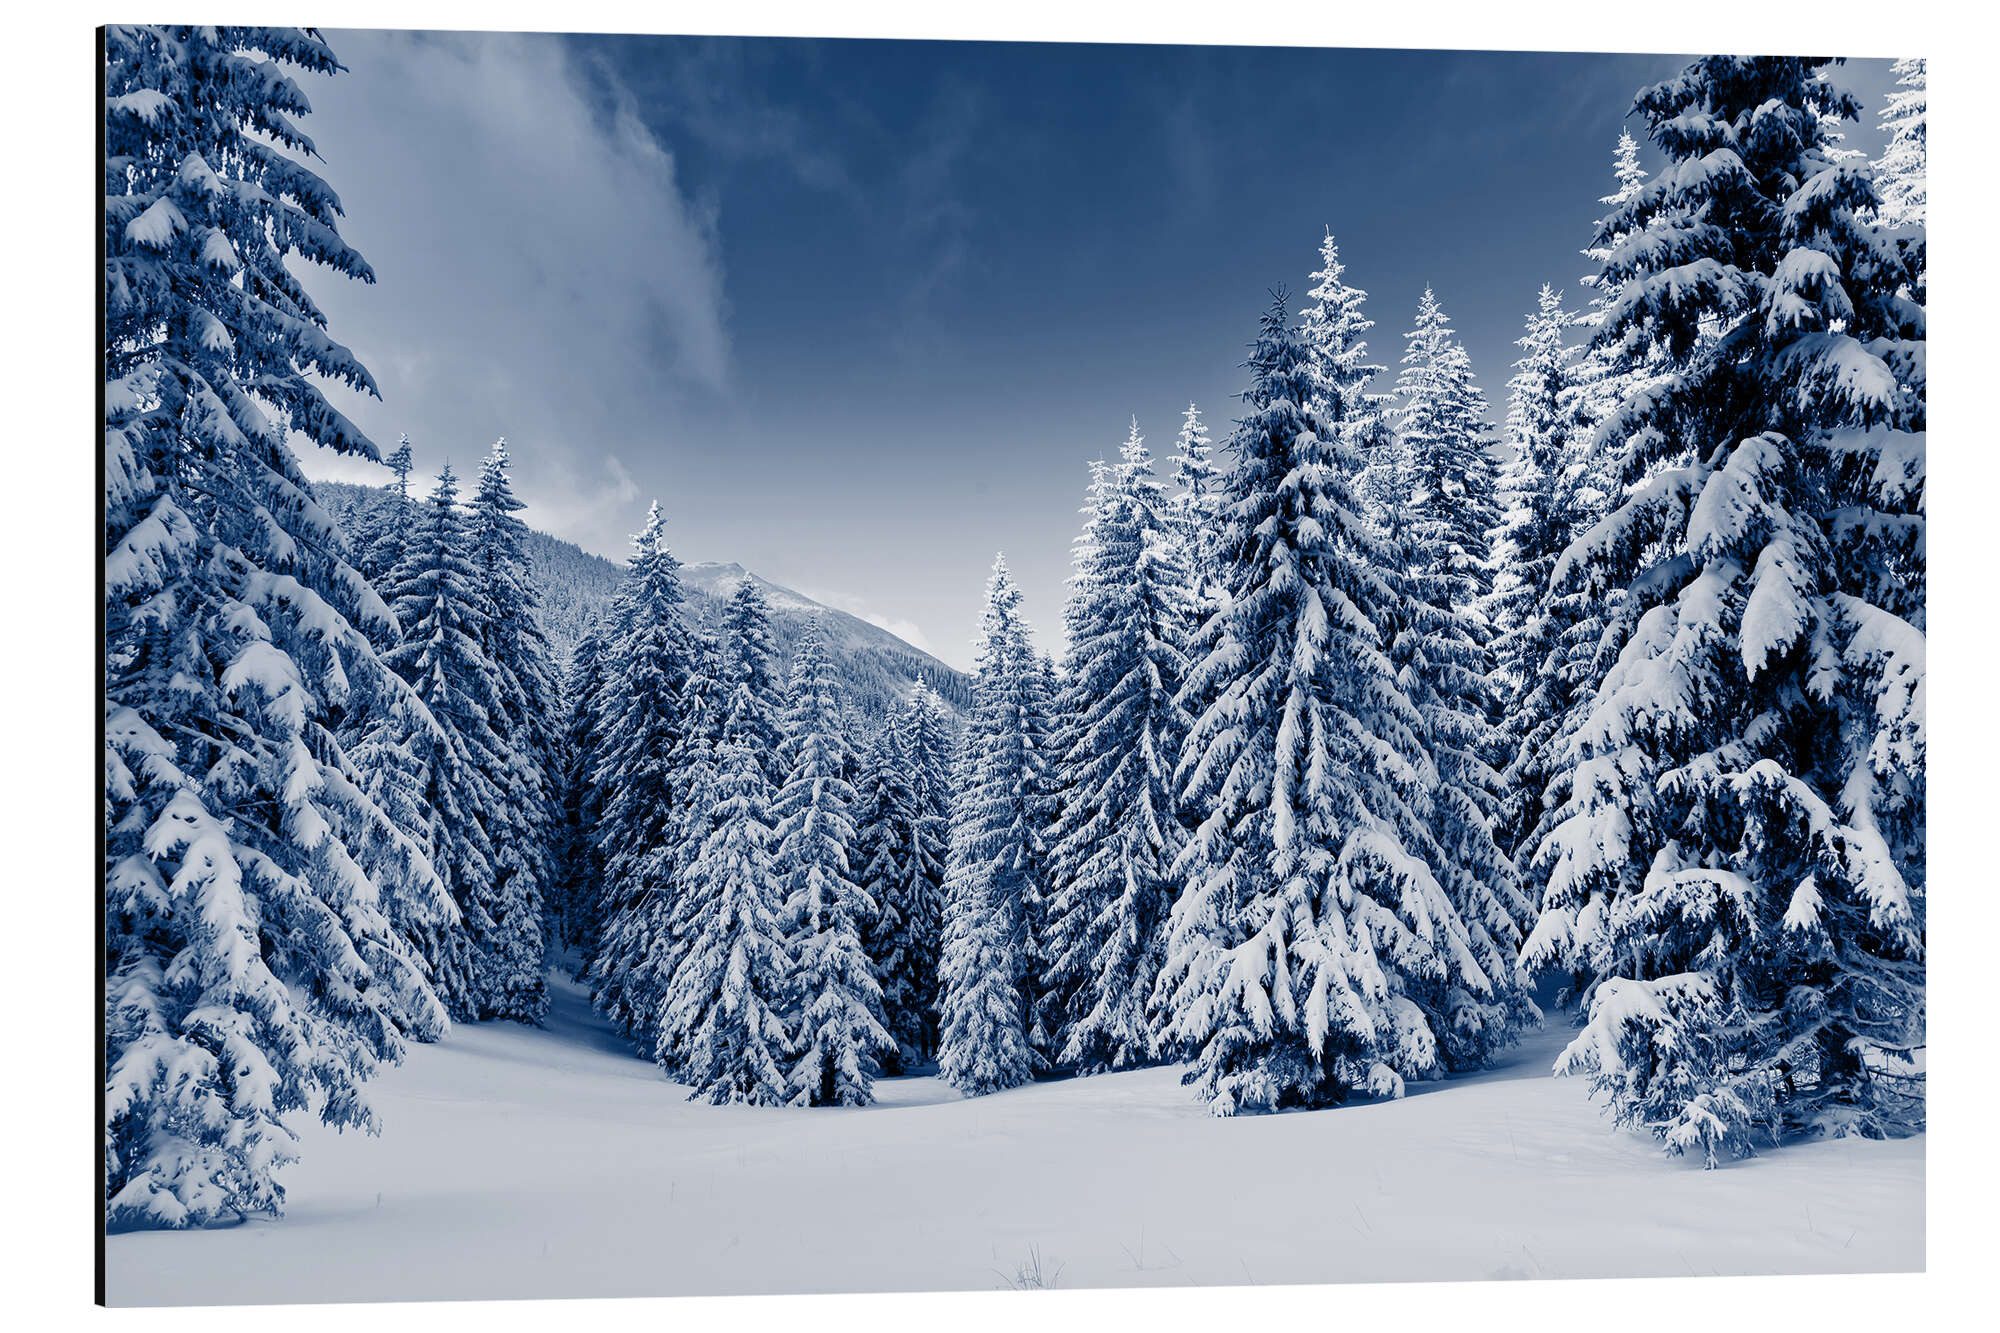 Posterlounge Alu-Dibond-Druck Editors Choice, Winterlandschaft mit schneebedeckten Bäumen, Fotografie